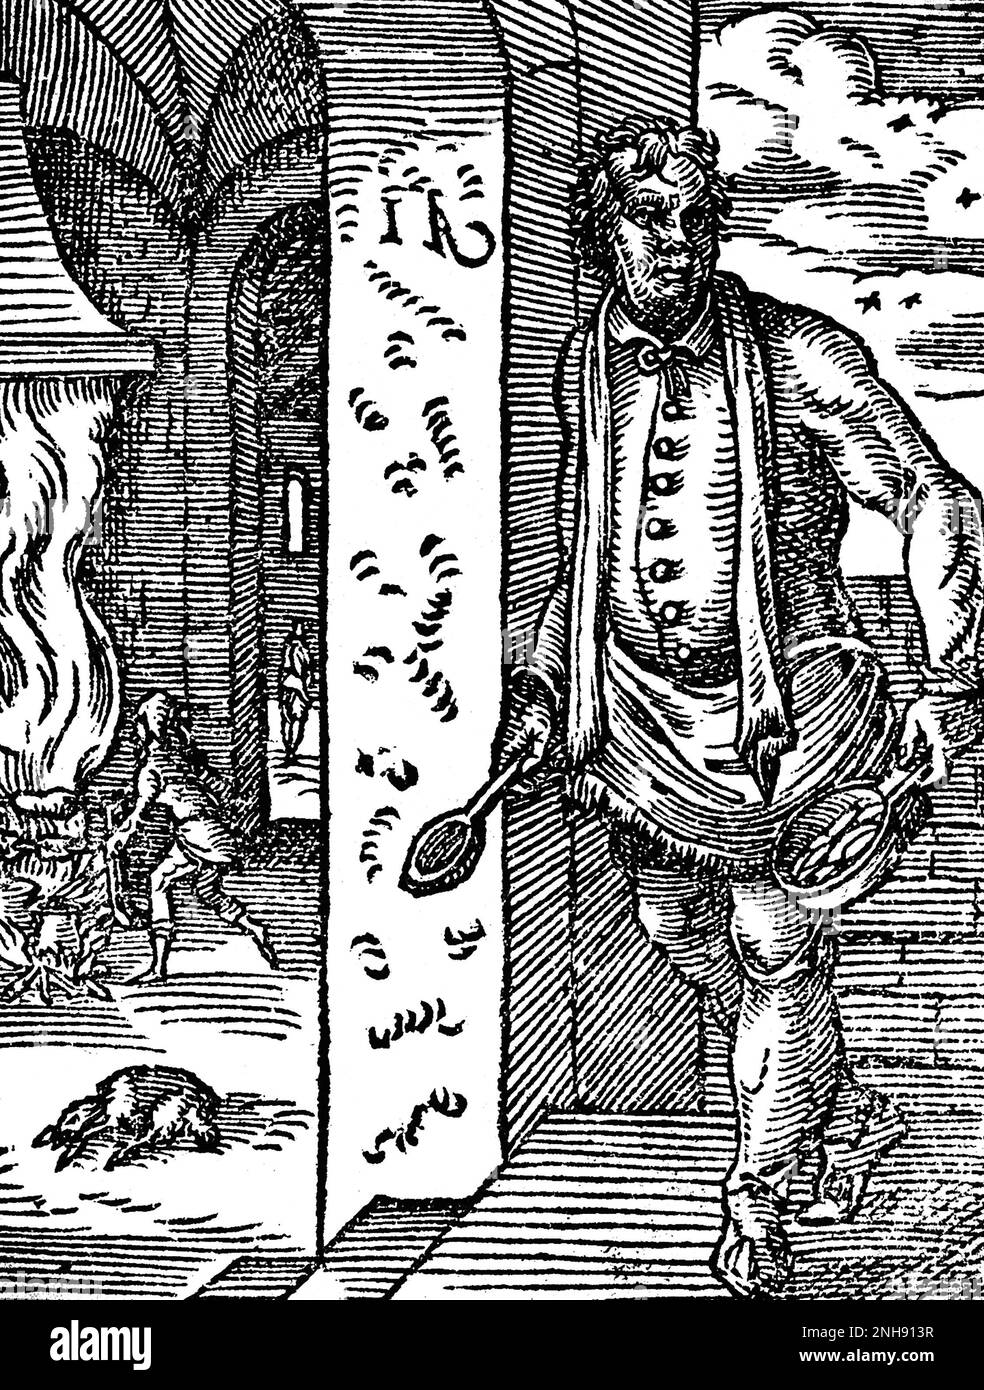 Un cuisinier tenant une casserole et une cuillère en bois, tandis que dans le fond un autre cuire rôde la viande sur une broche. Coupe de bois du Livre des métiers de Jost Amman, 1568. Banque D'Images